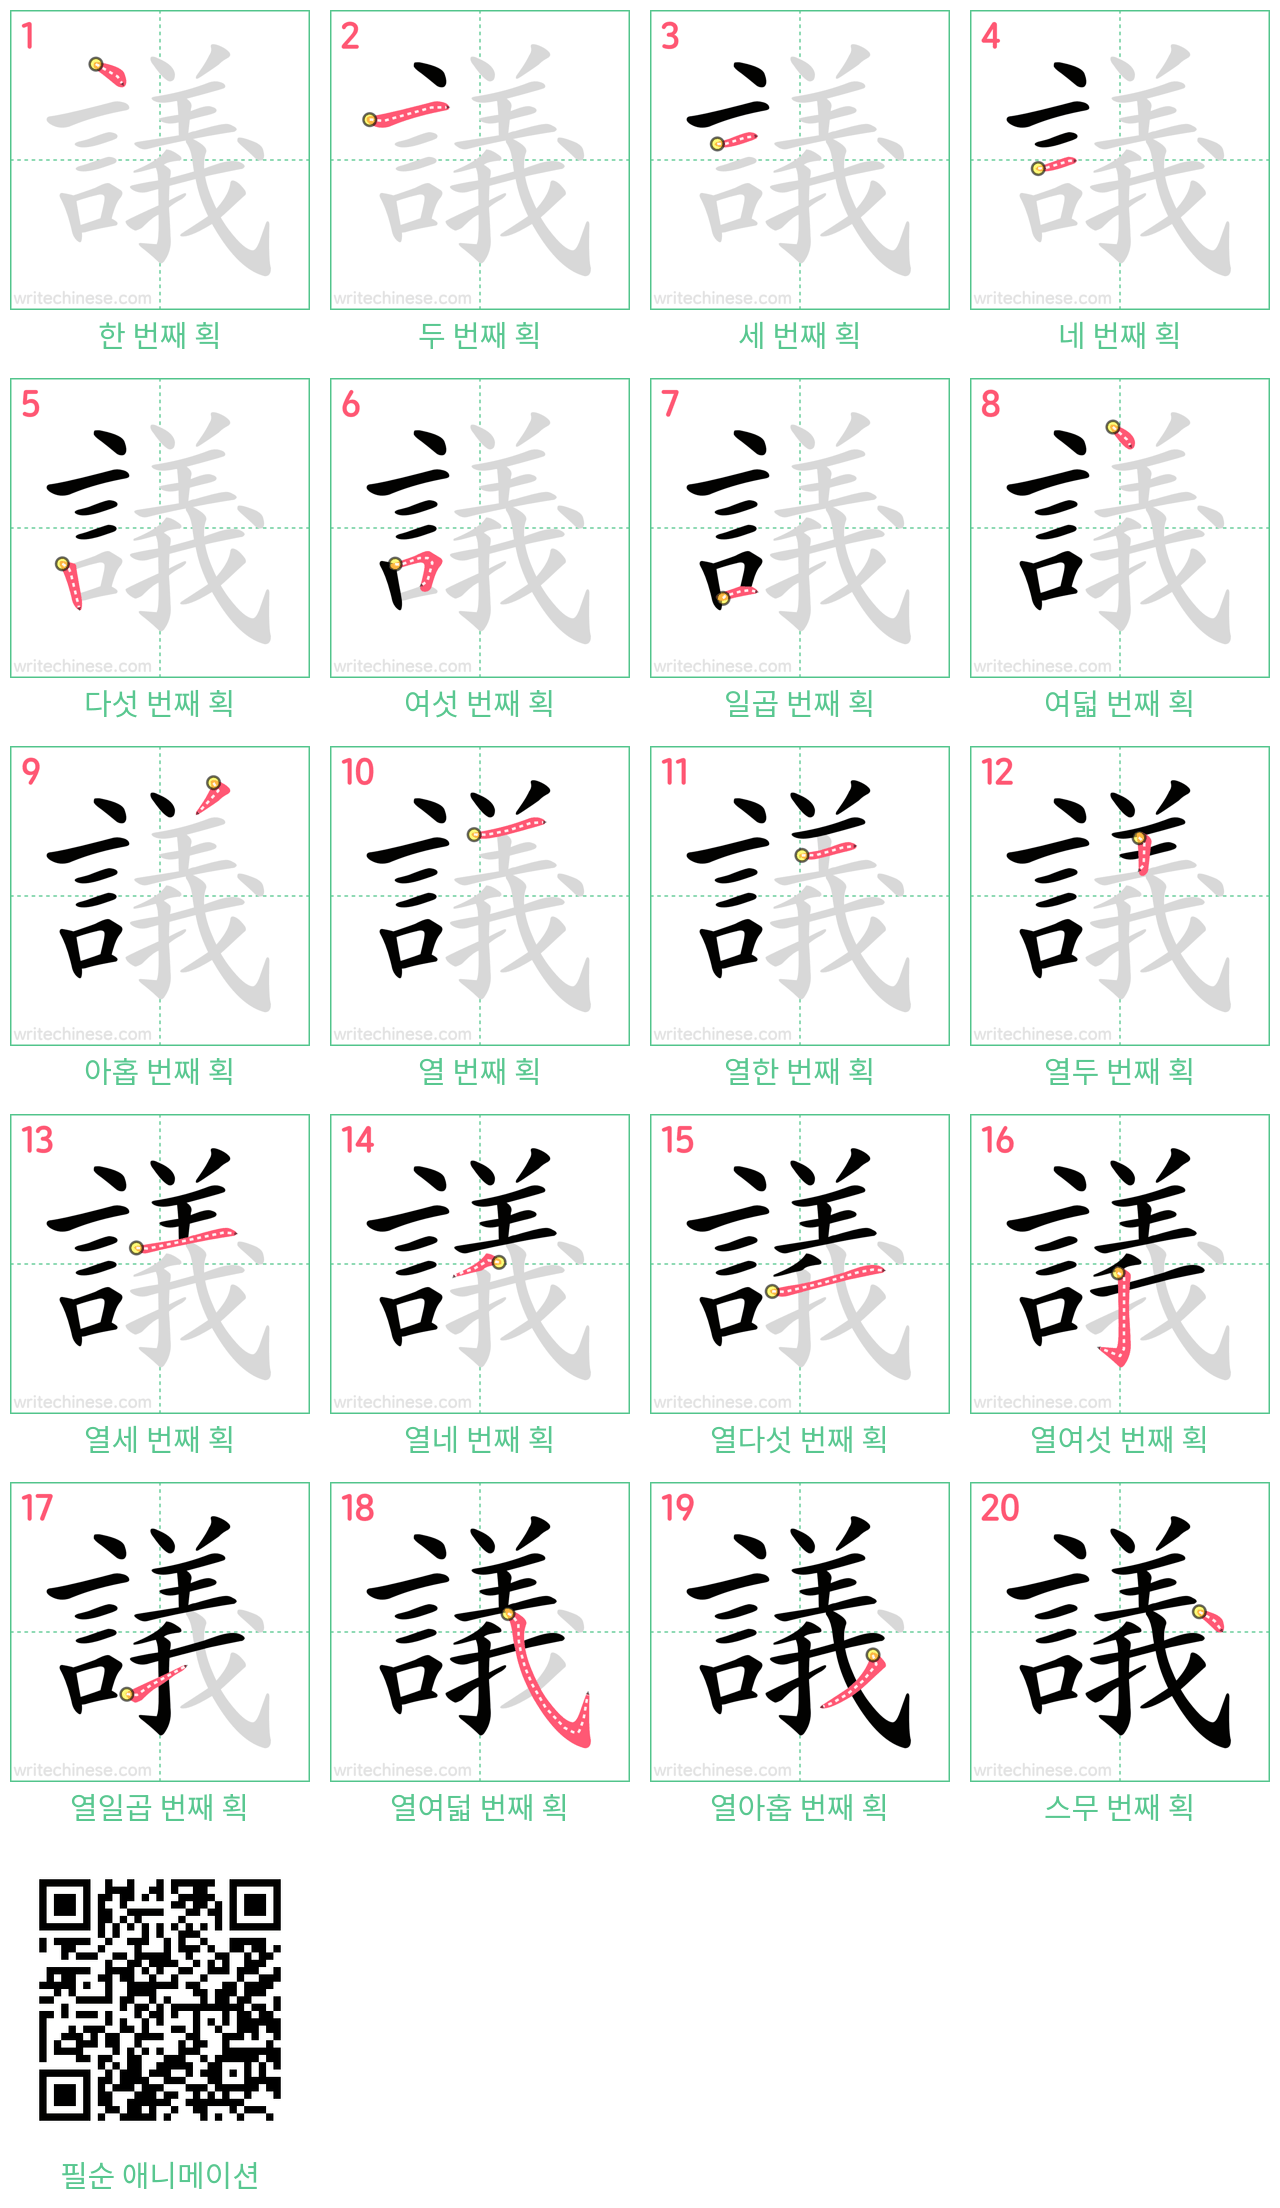 議 step-by-step stroke order diagrams